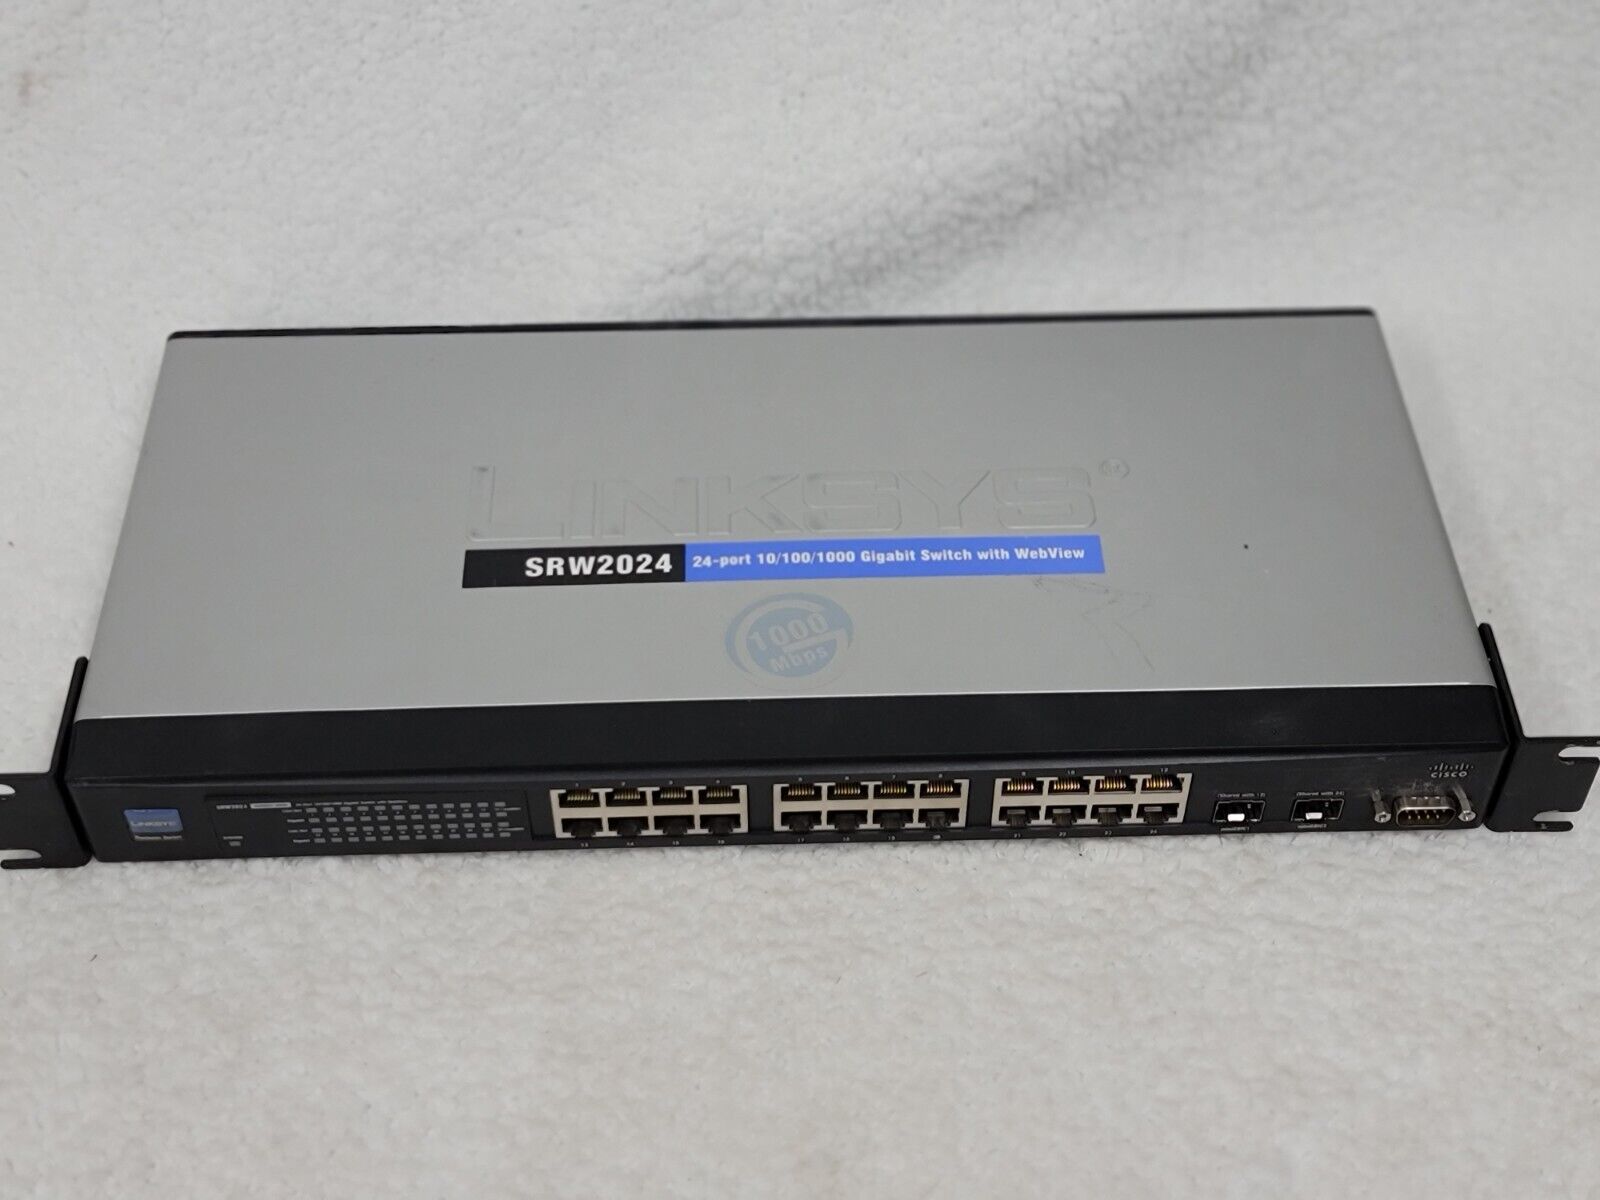 Cisco Systems Linksys SRW2024 v1 24-port 10/100/1000 Gigabit Switch With WebView